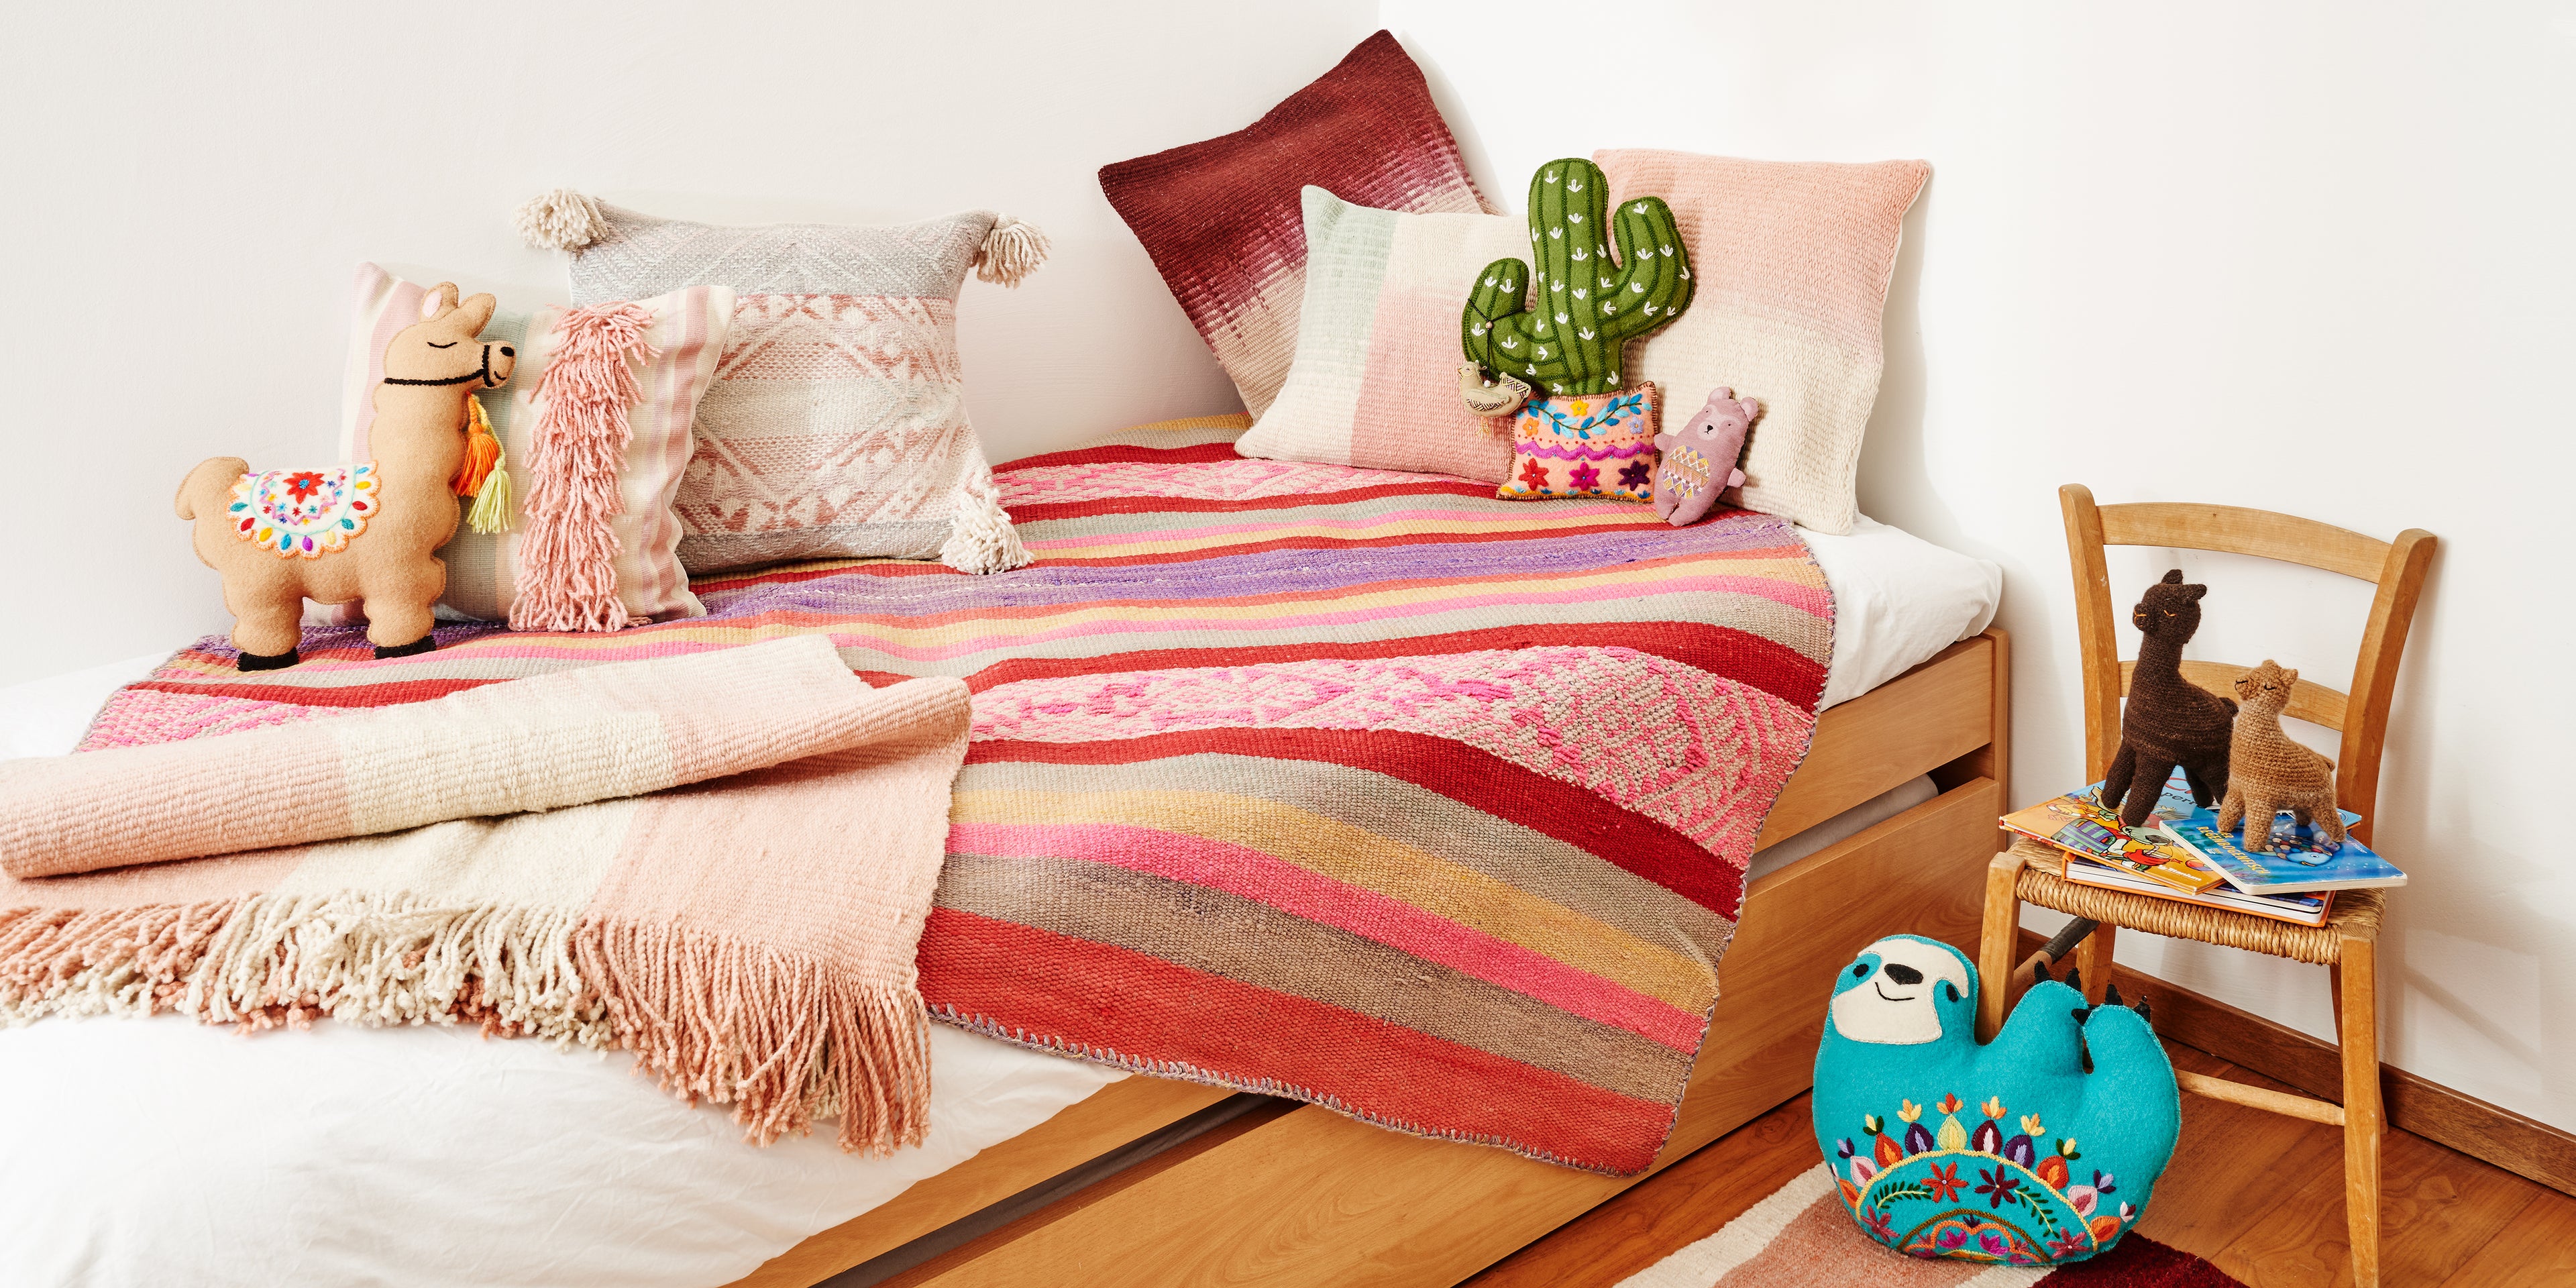 Peruanische Design Kissen, Teppiche und Stofftiere auf einem Bett